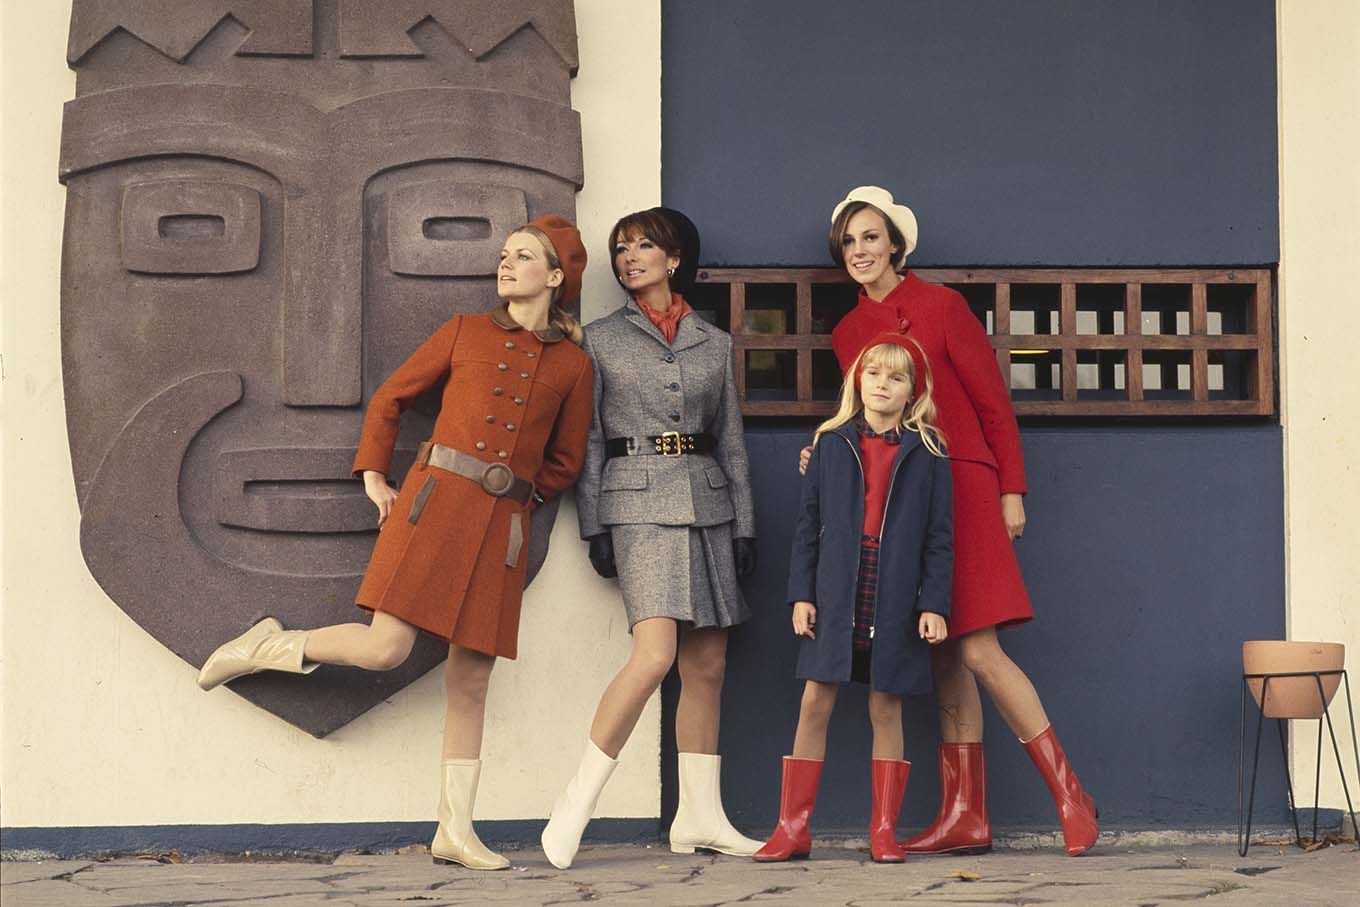 Reklame for Viking gummistøvler. Tre kvinner og en jente i drakter og røde og hvite gummistøvler ved inngangen til Kontiki-museet på Bygdøy i Oslo. Foto.